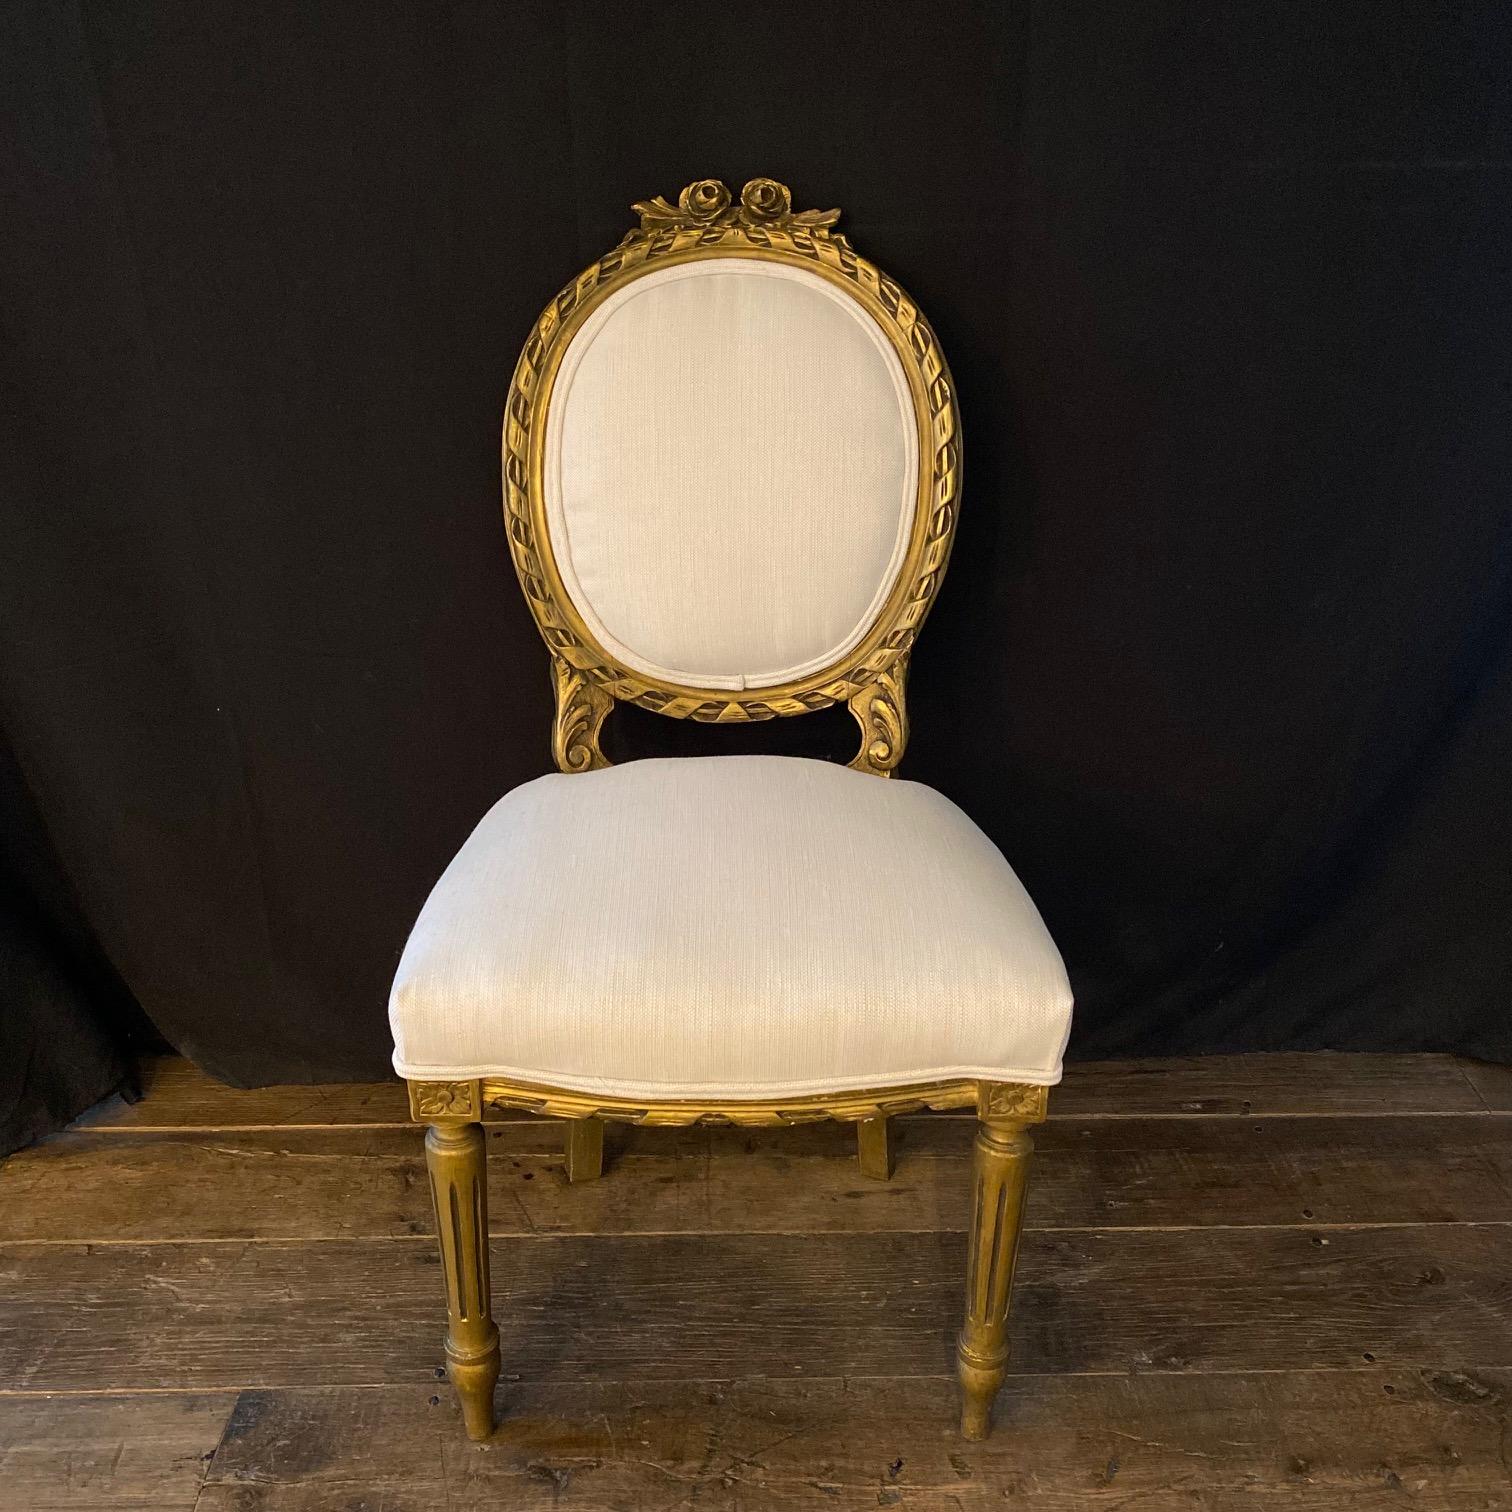 Moviestar glamour paire de chaises d'appoint en bois doré sculpté d'époque Louis XVI. Nous aimons l'élégance sobre du style Louis XVI et ces chaises présentent de nombreux détails caractéristiques de ce style : dossier ovale, jolies sculptures et